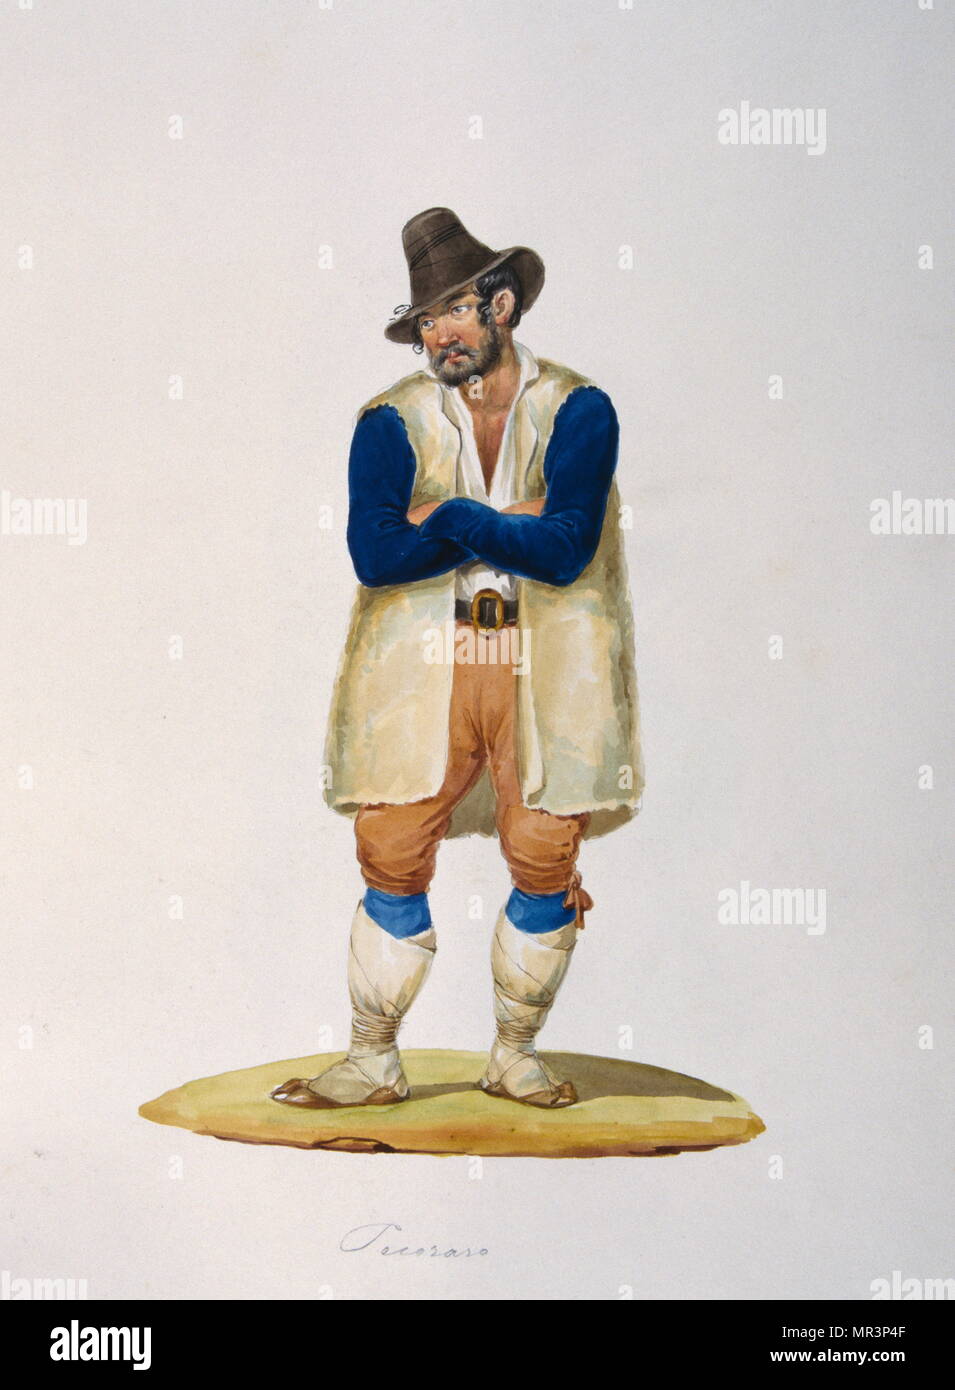 Peinture à la gouache représentant un paysan italien en costume traditionnel. Vers 1850 Banque D'Images